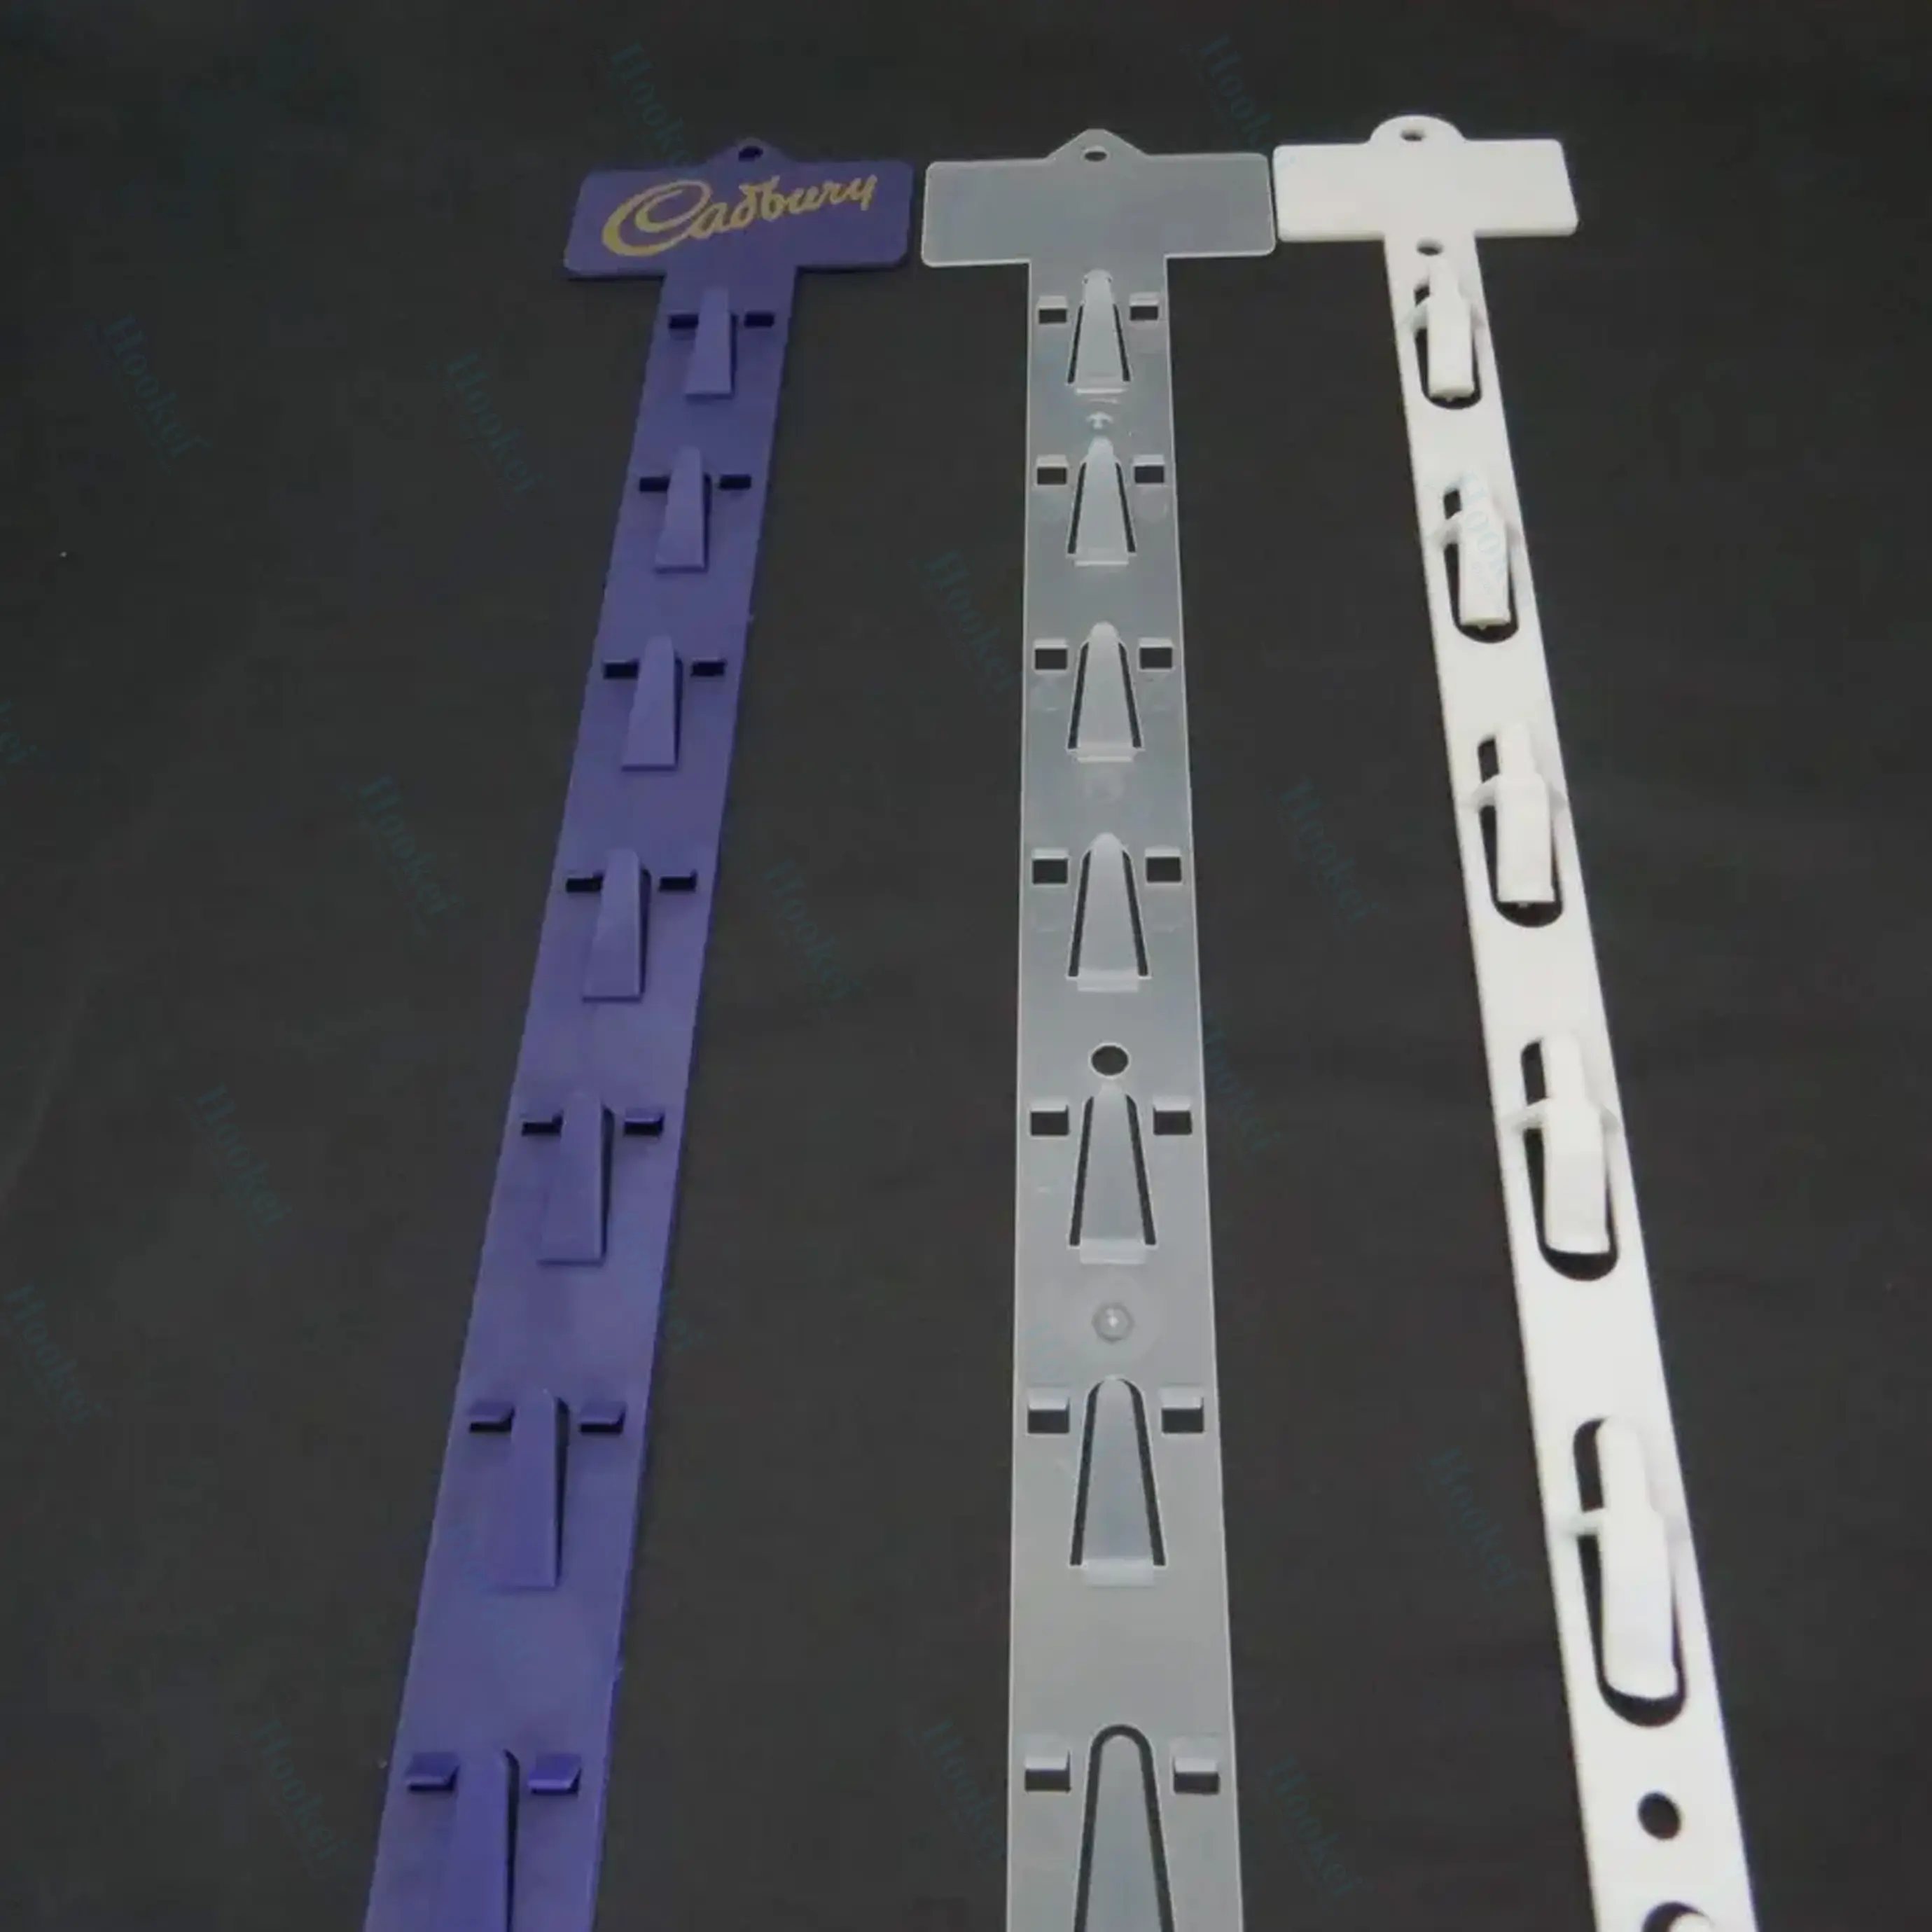 Strip klip gantung Harga terbaik strip klip gantung display plastik bening strip klip gantungan